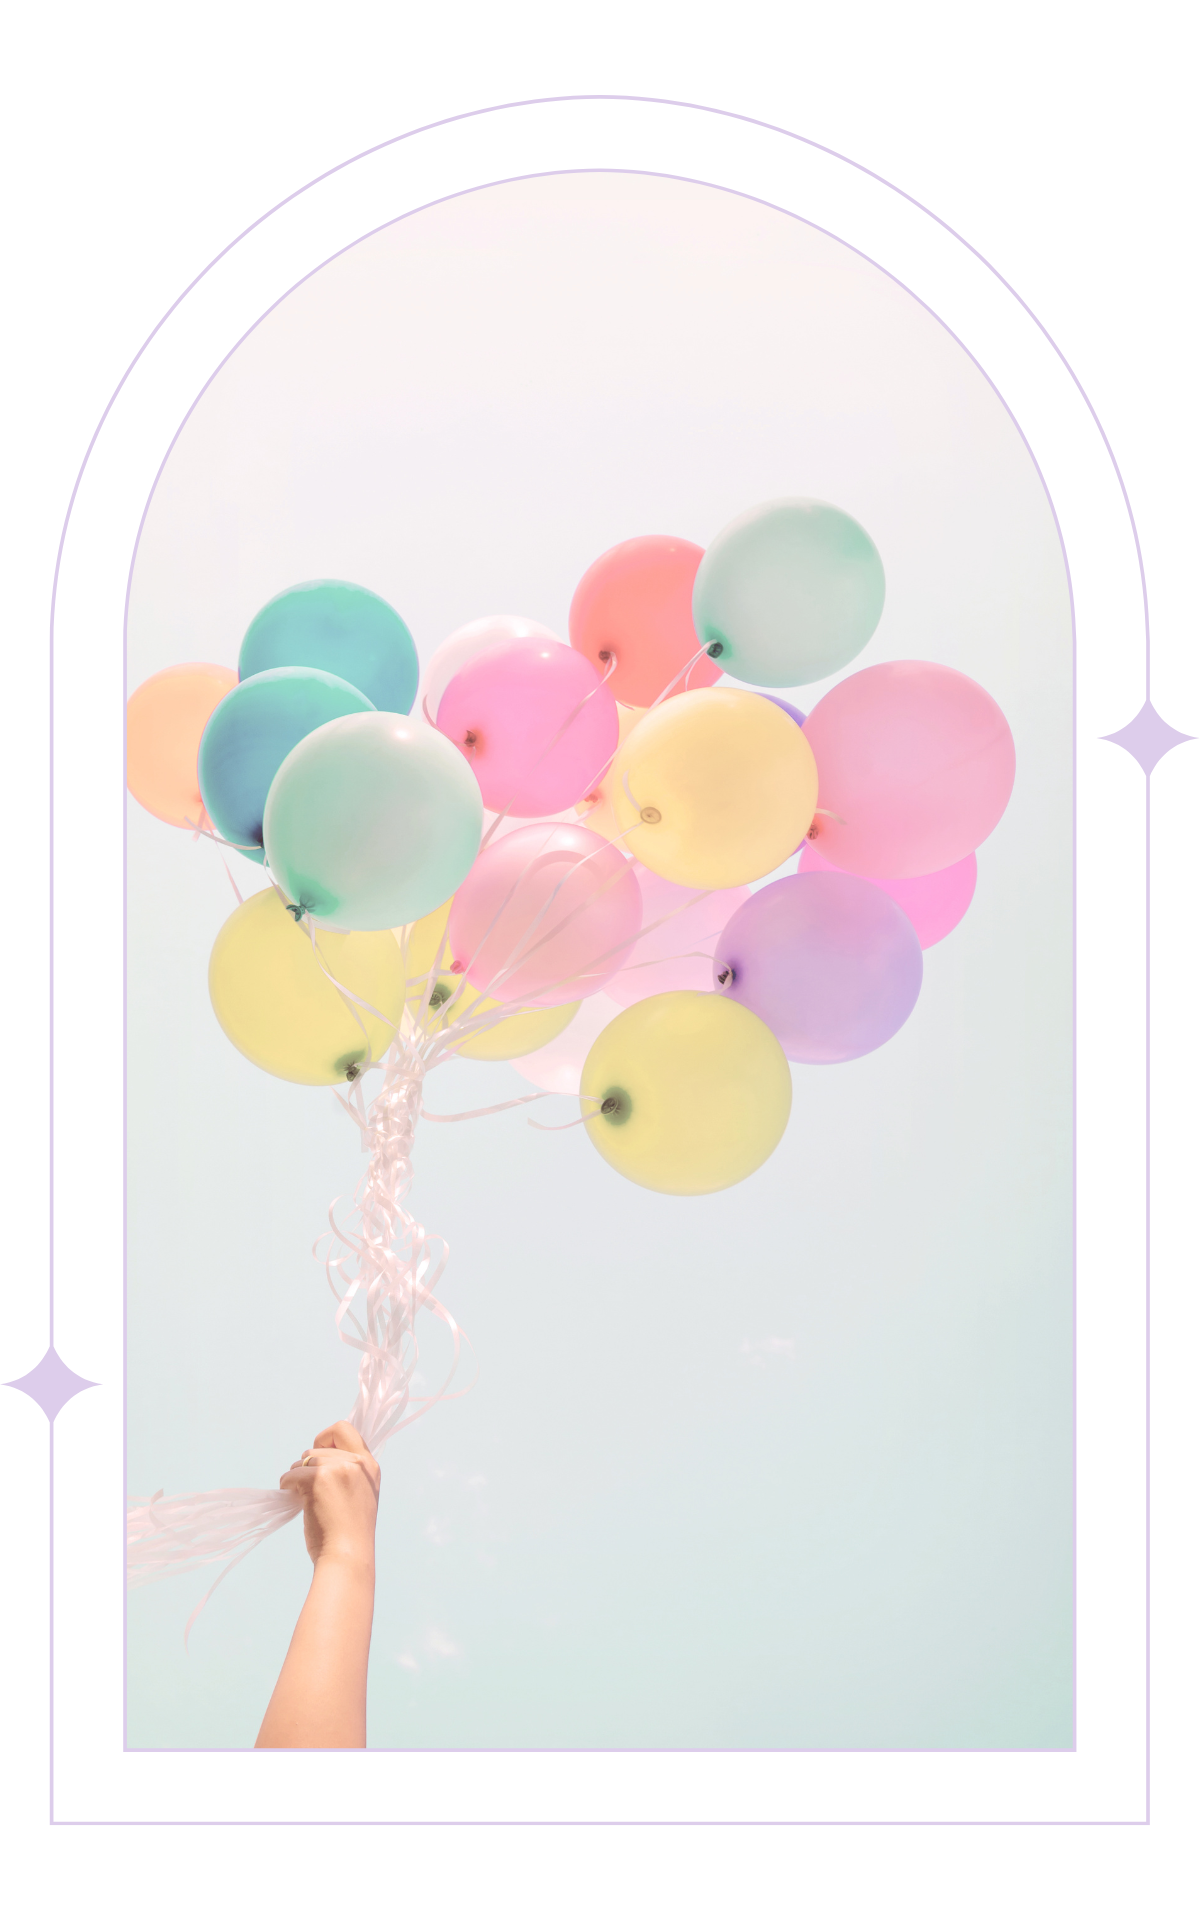 Image décorative d'une main tenant des ballons colorés